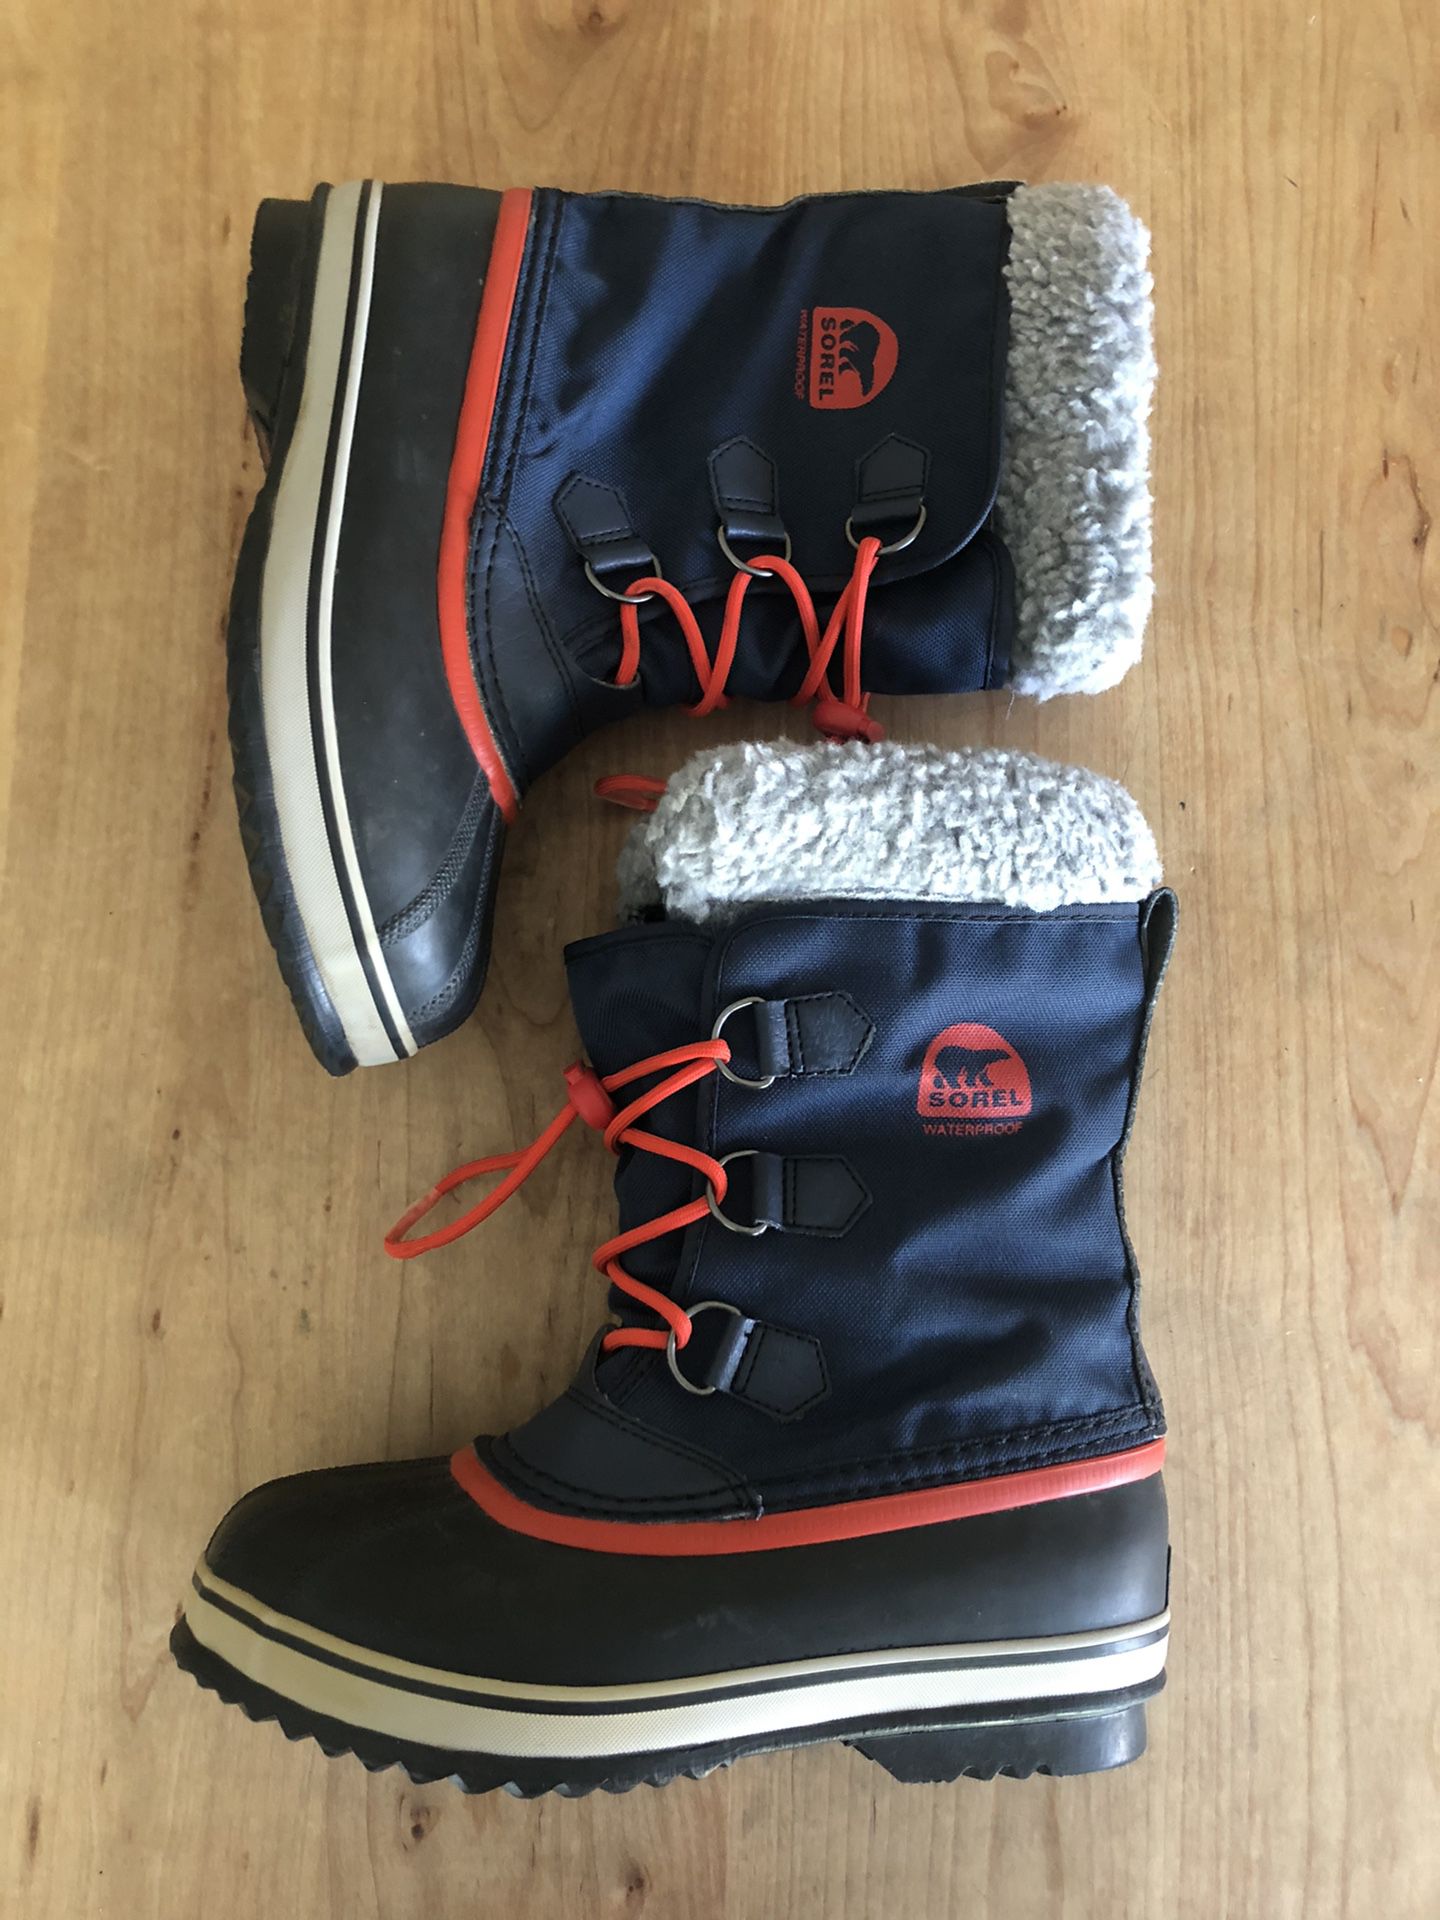 Sorel Waterproof Snow Boots Men's 5 Excellent Condition!!!